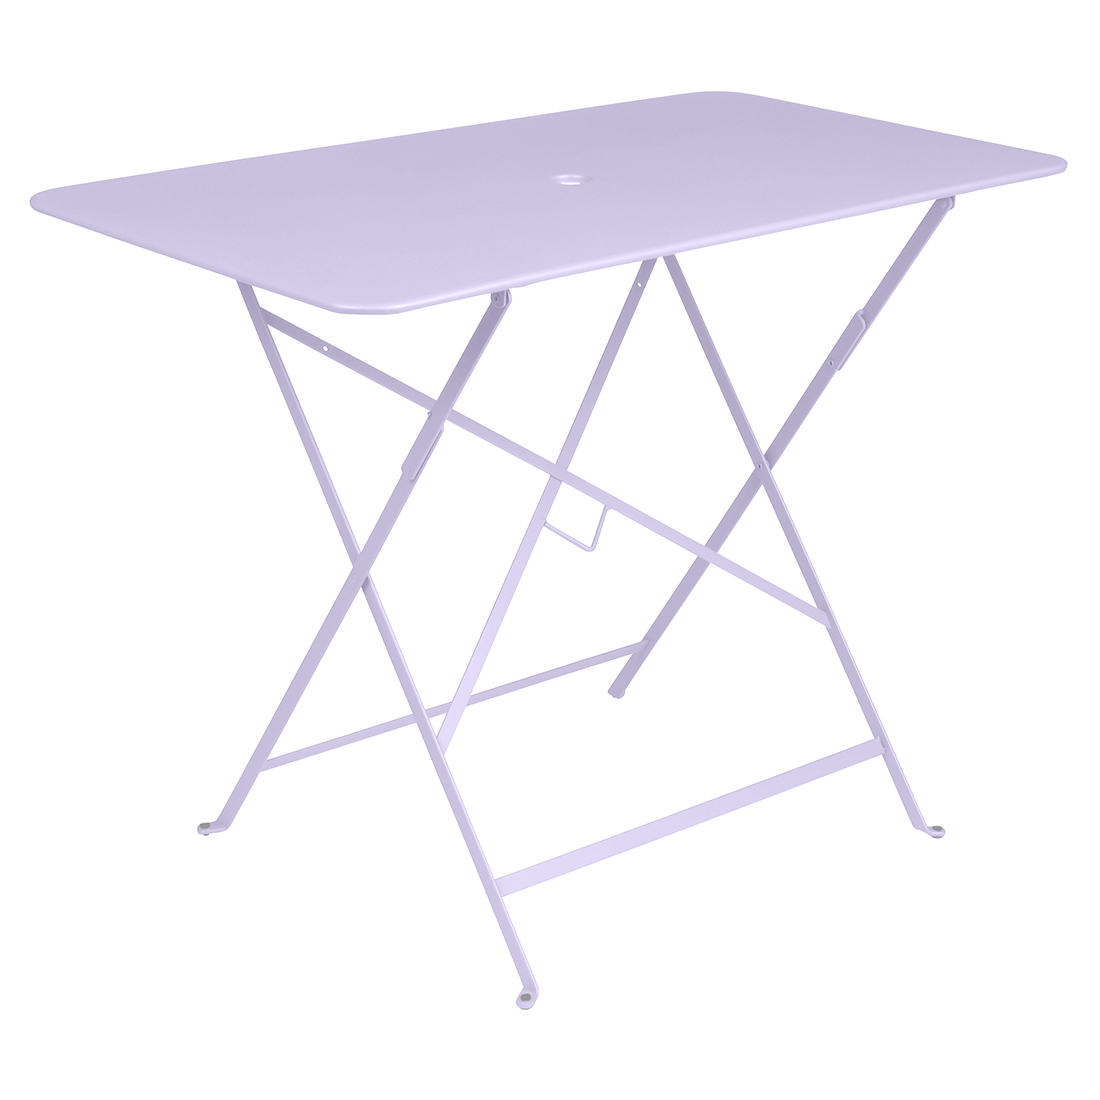 Bistro Tisch 57x97 cm, Marshmallow